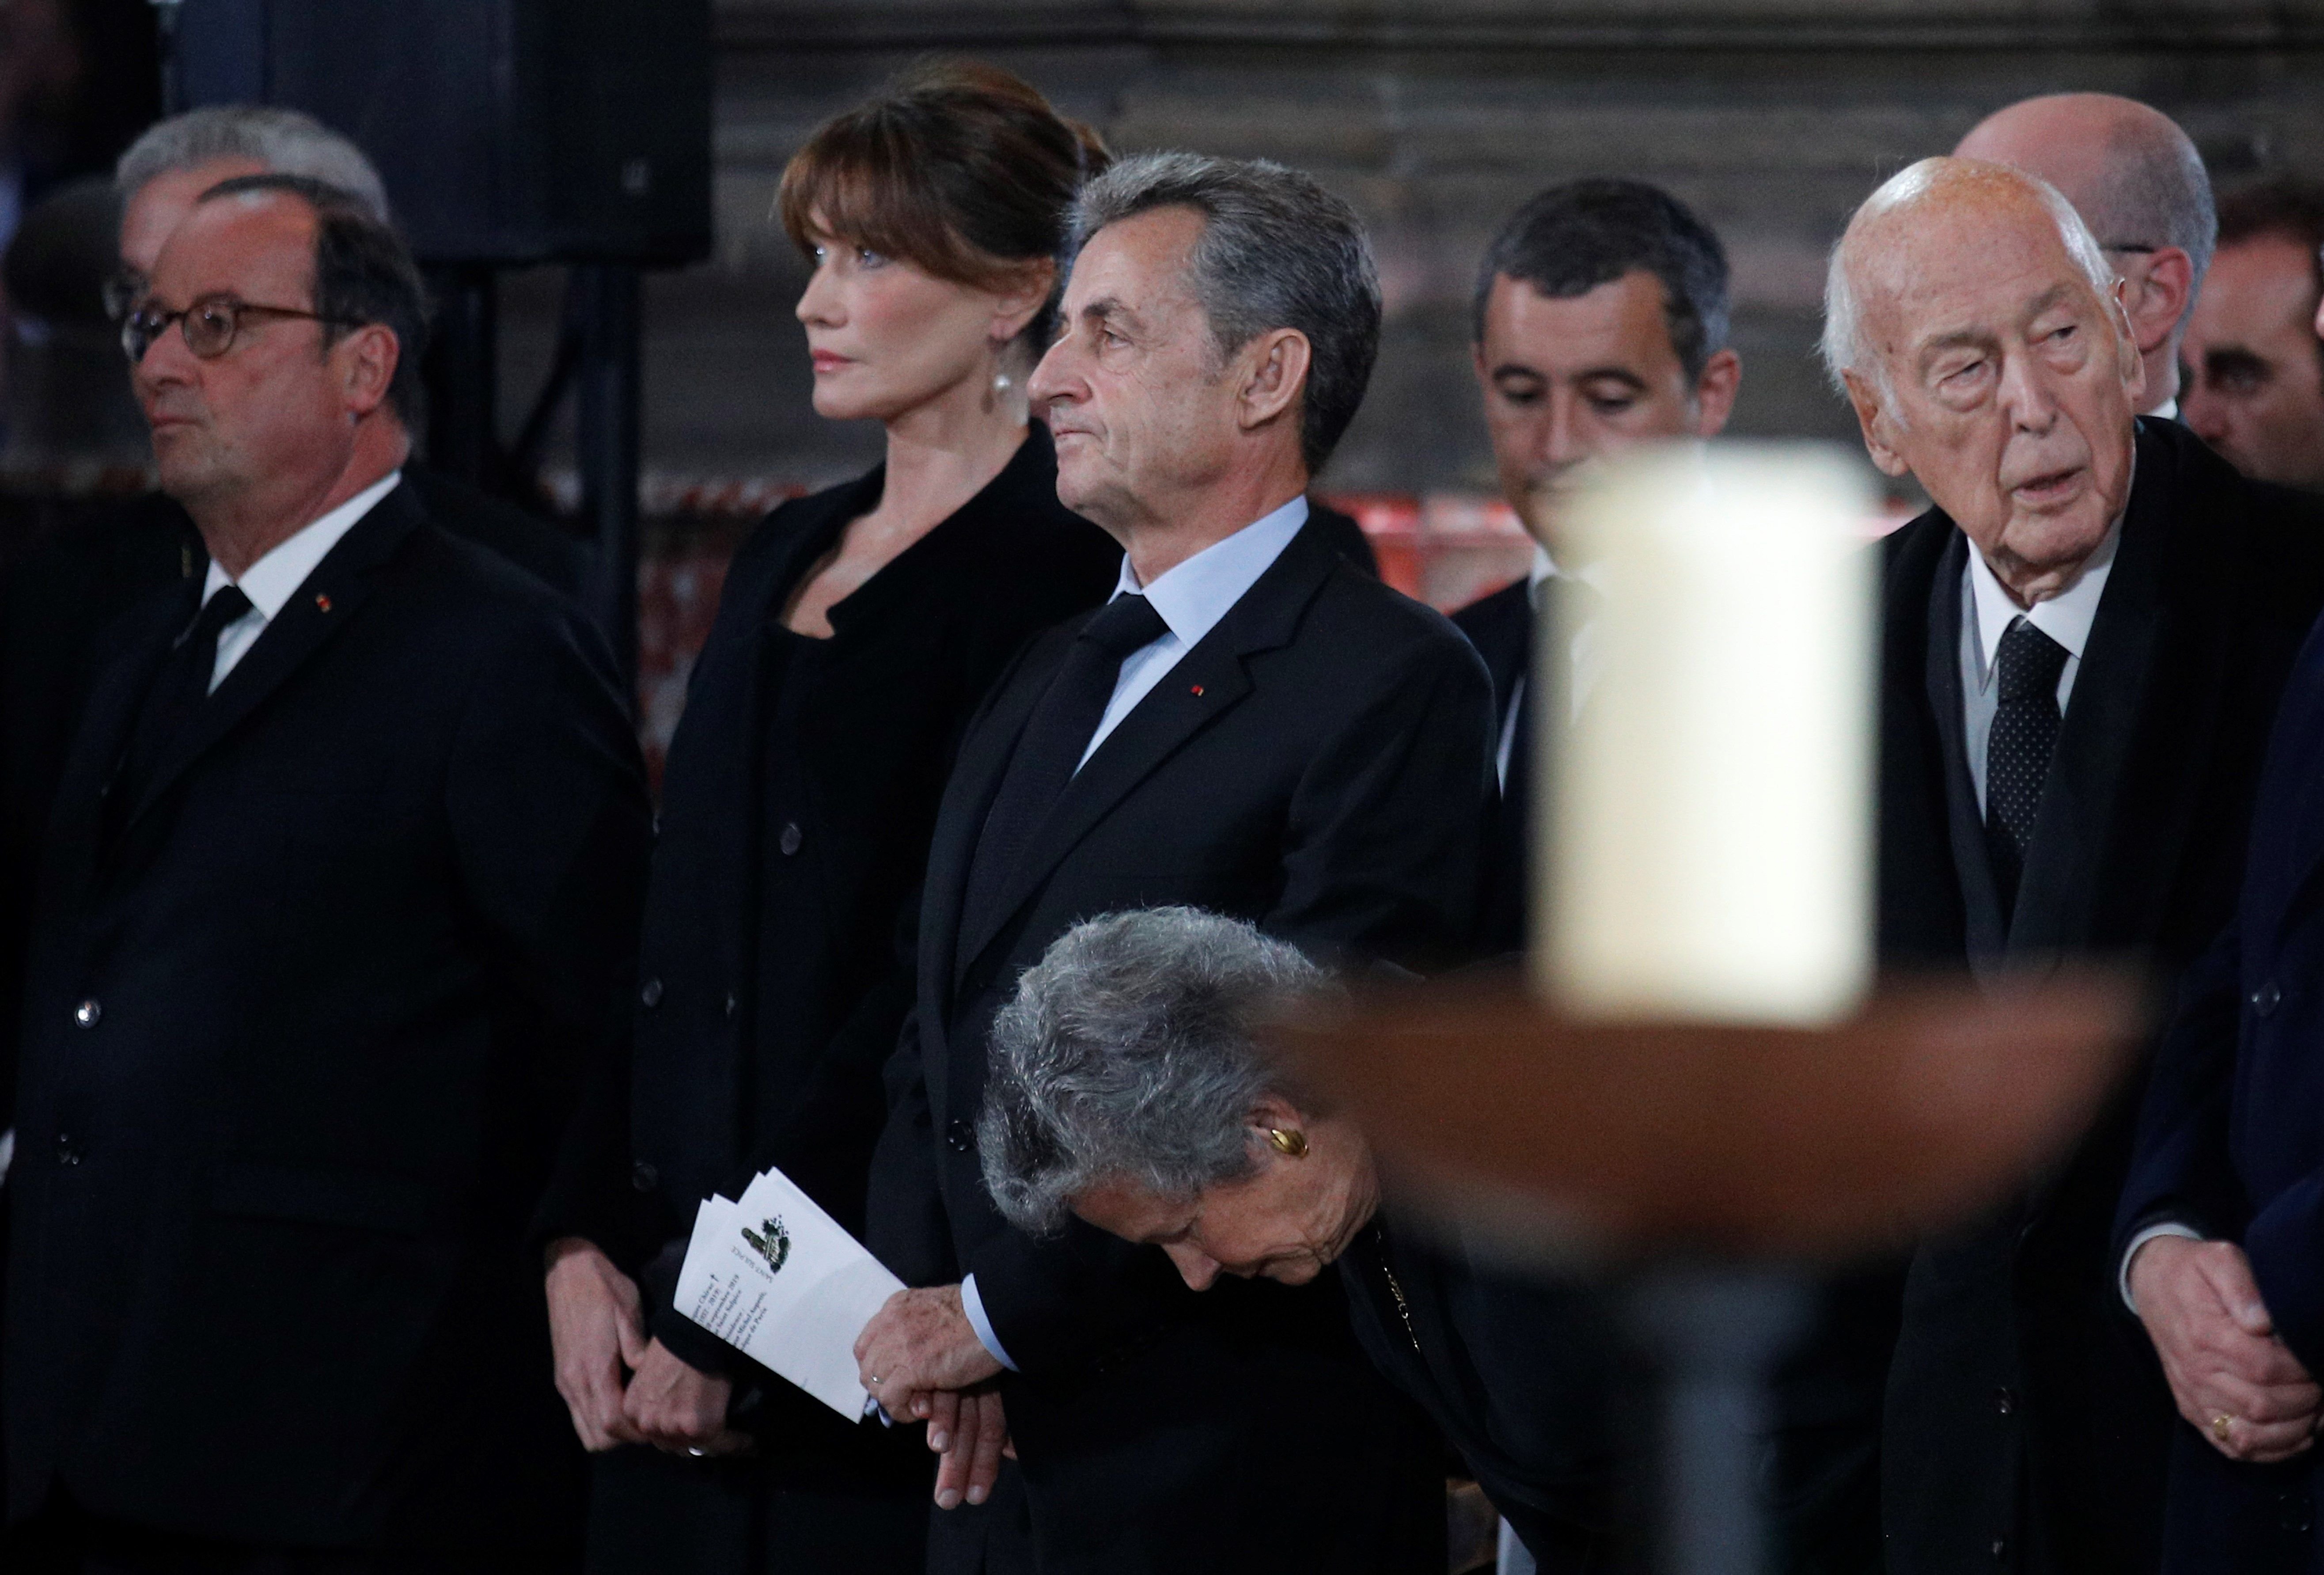 VÍDEO | Què diu François Hollande a Carla Bruni perquè posi aquesta cara?